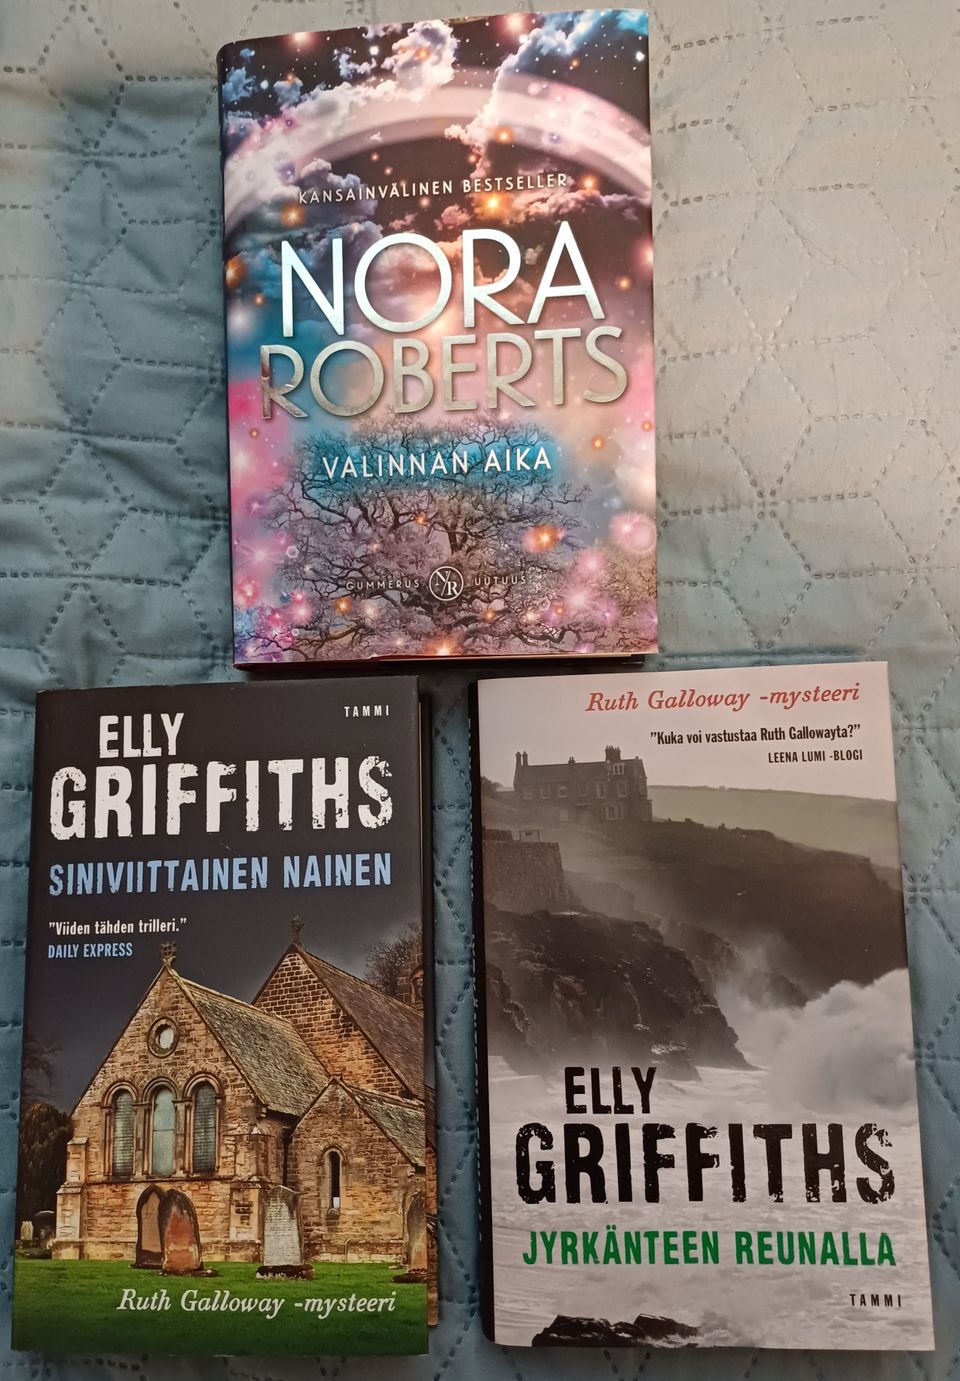 Kirjoja; Nora Roberts, Elly Griffts, Terry Pratchett, J.K Rowling ym.